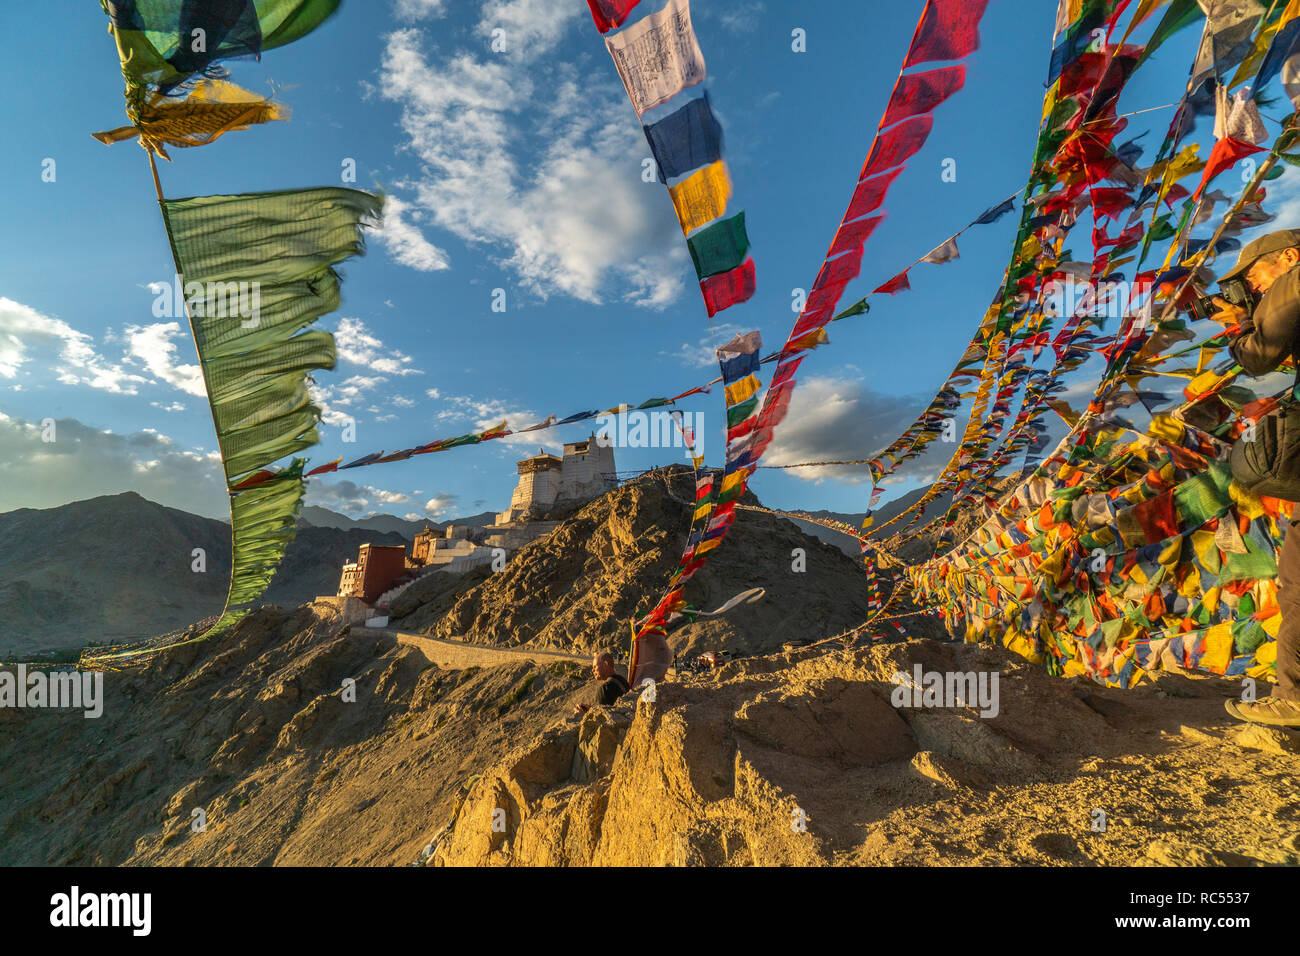 Les drapeaux de prières bouddhistes au-dessus de Leh en Inde flottant au vent. Monastère Namgyal Tsemo en arrière-plan. Banque D'Images